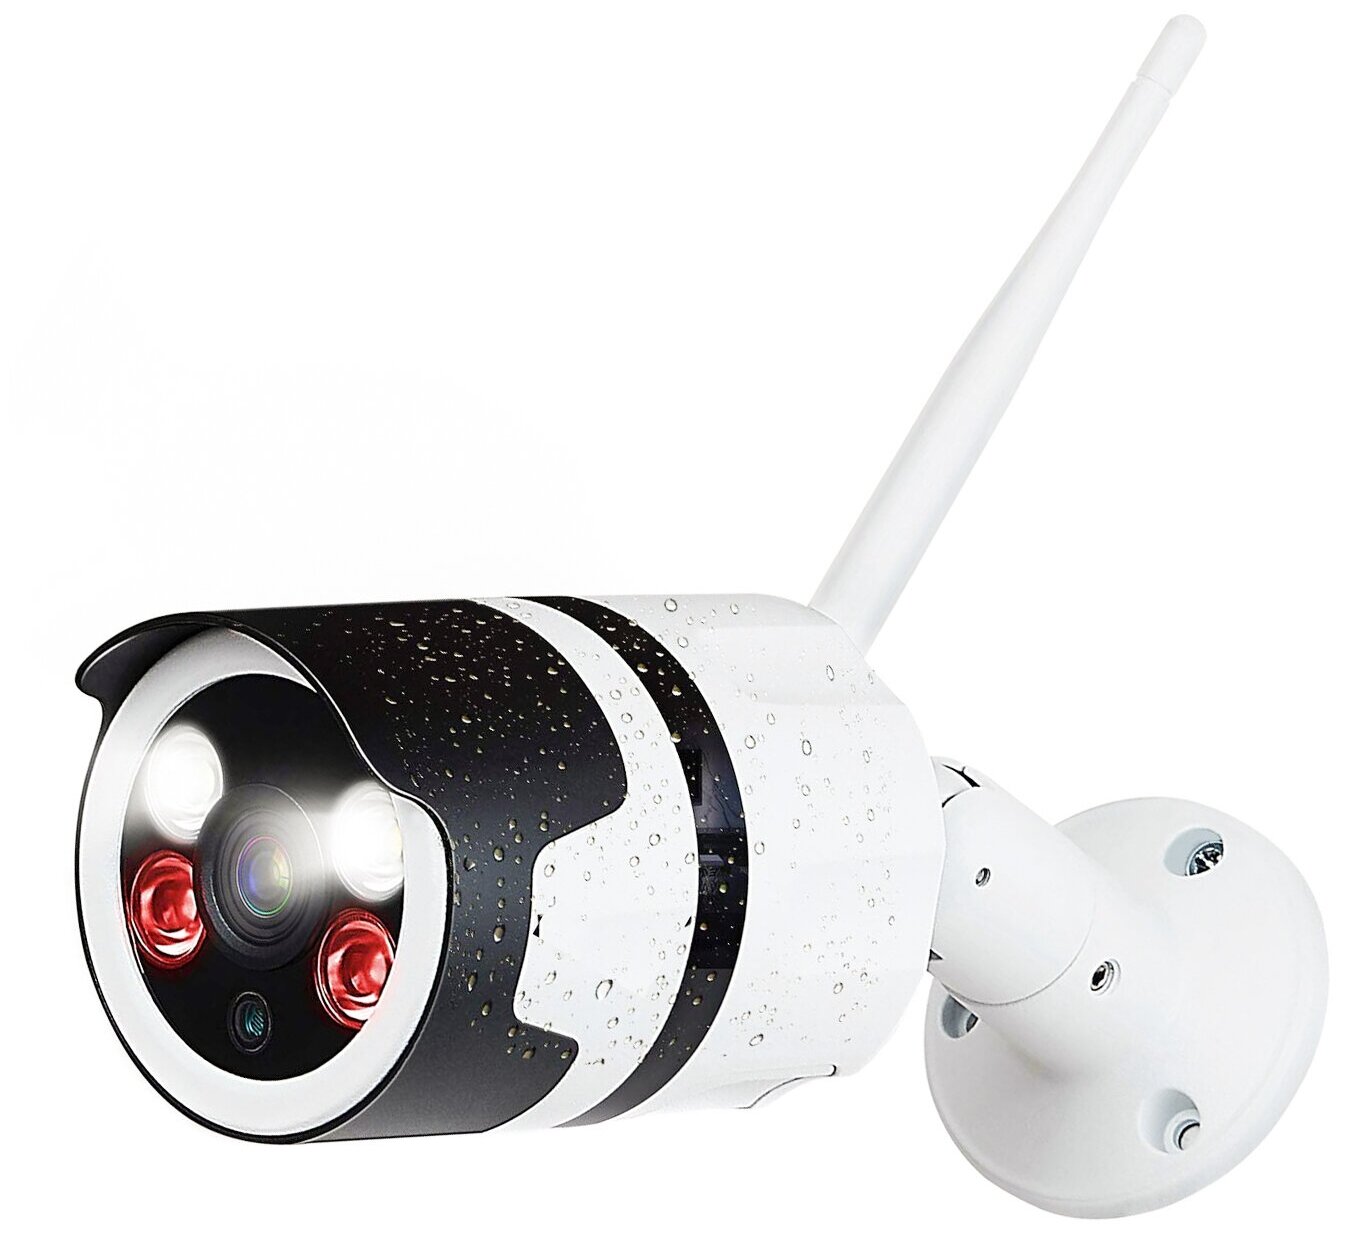 Беспроводная уличная IP камеры видеонаблюдения 4к (8Mp) - Link 403-ASW8-8GH камеры ночные уличные. Микрофон и динамик.